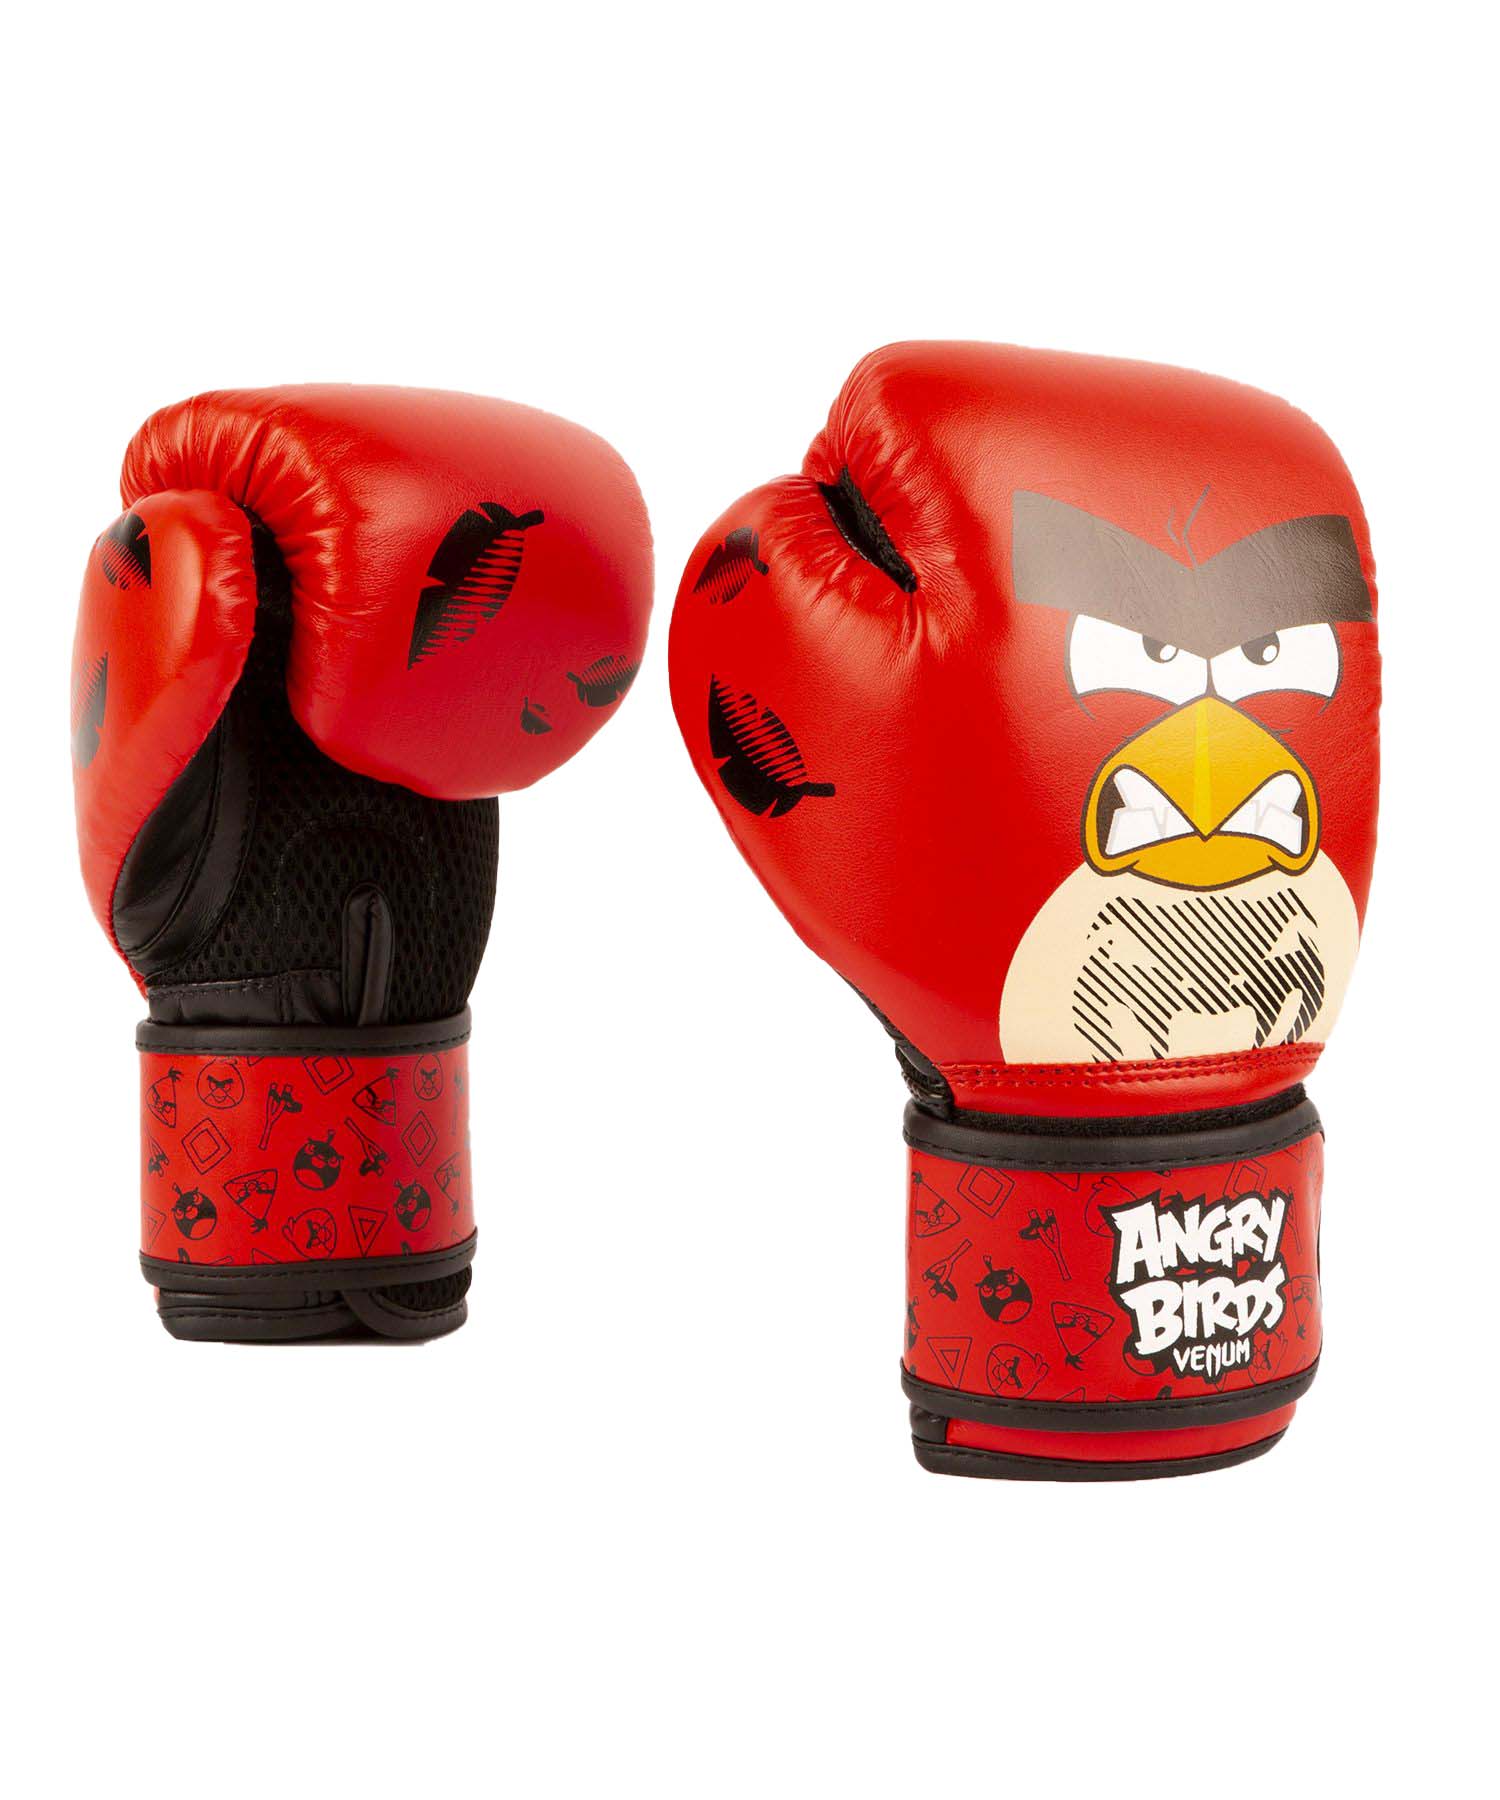 Dětské boxerské rukavice Angry Birds VENUM červené vel. 8 oz